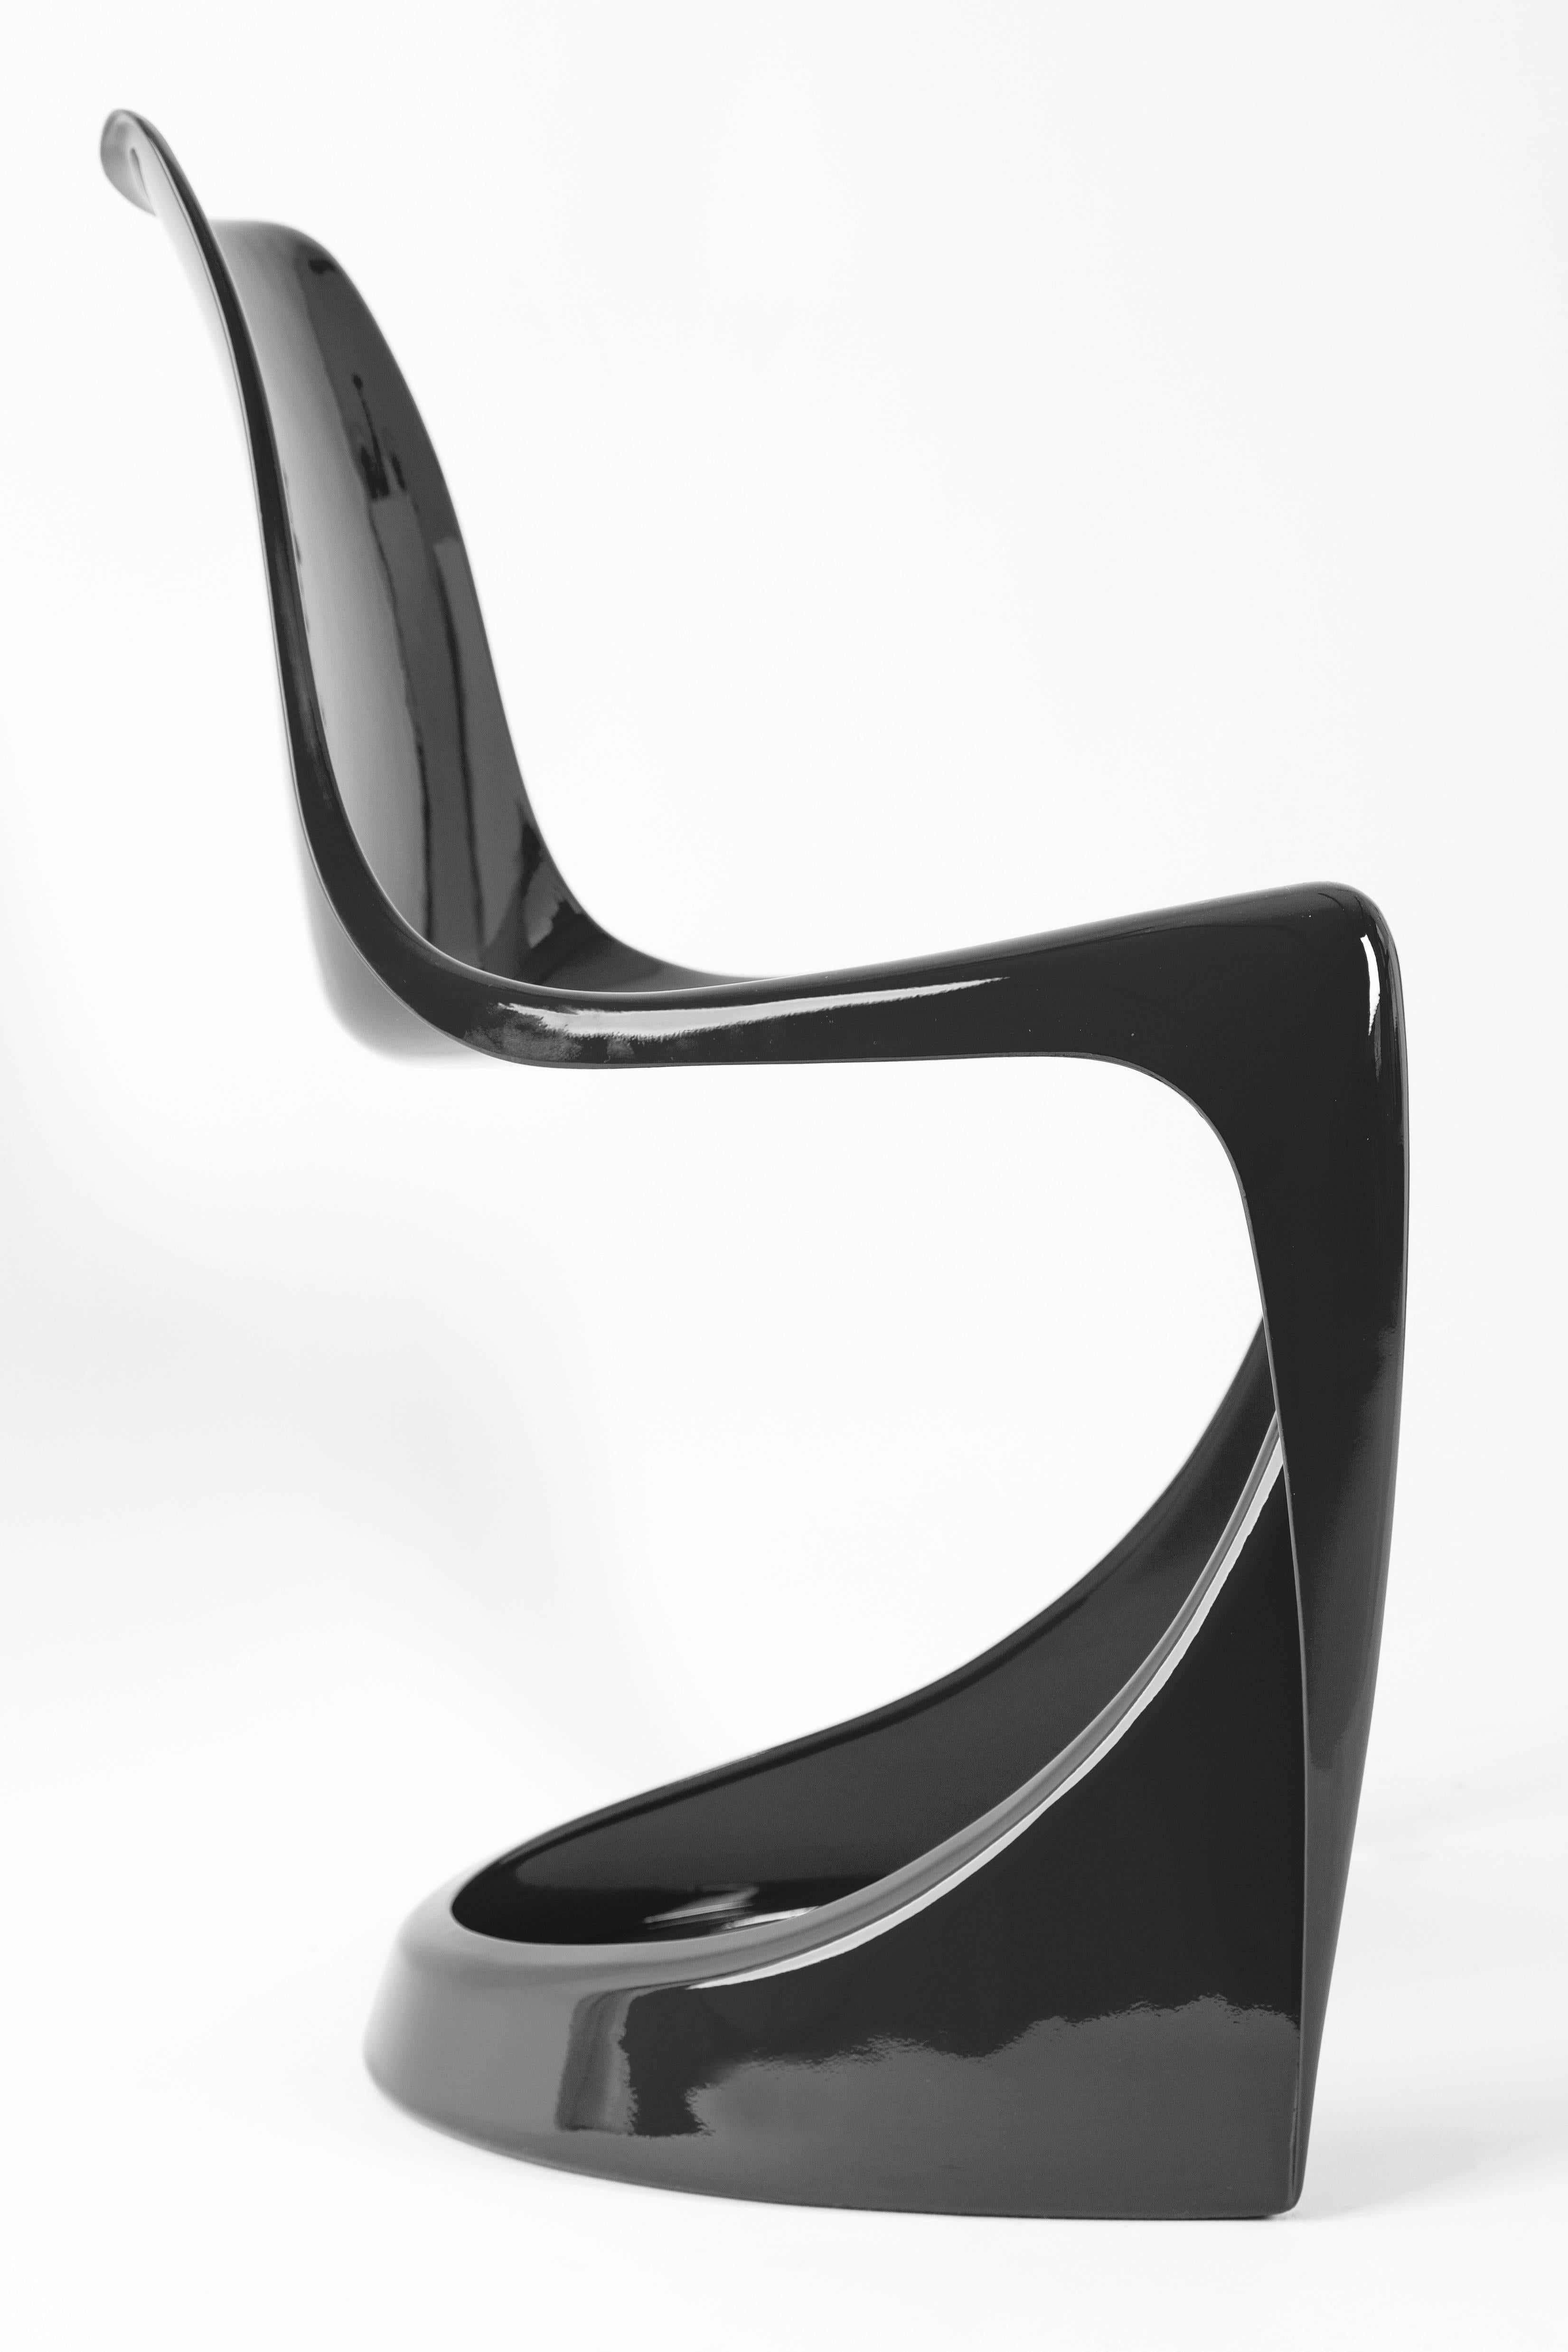 Stühle aus polnischer Produktion der Kunststofffabrik 